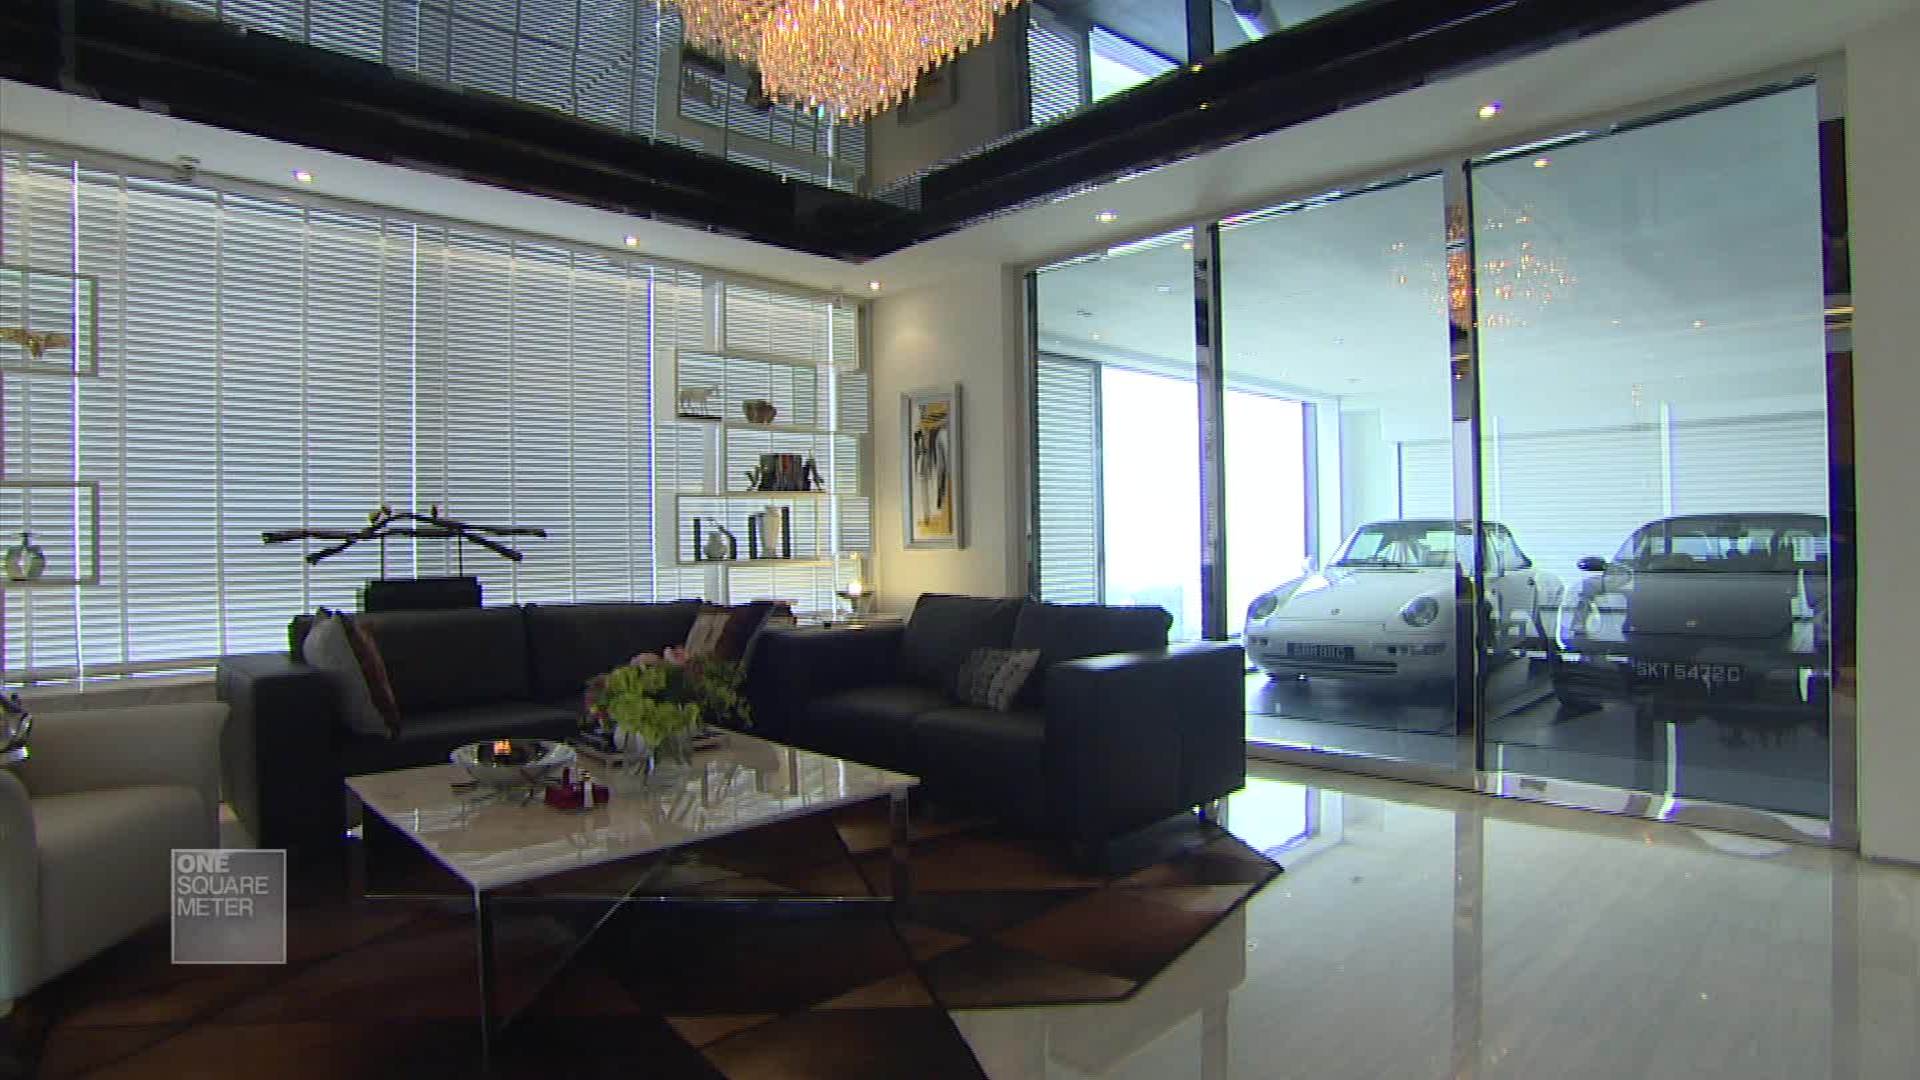 RÃ©sultat de recherche d'images pour "living room garage singapore"